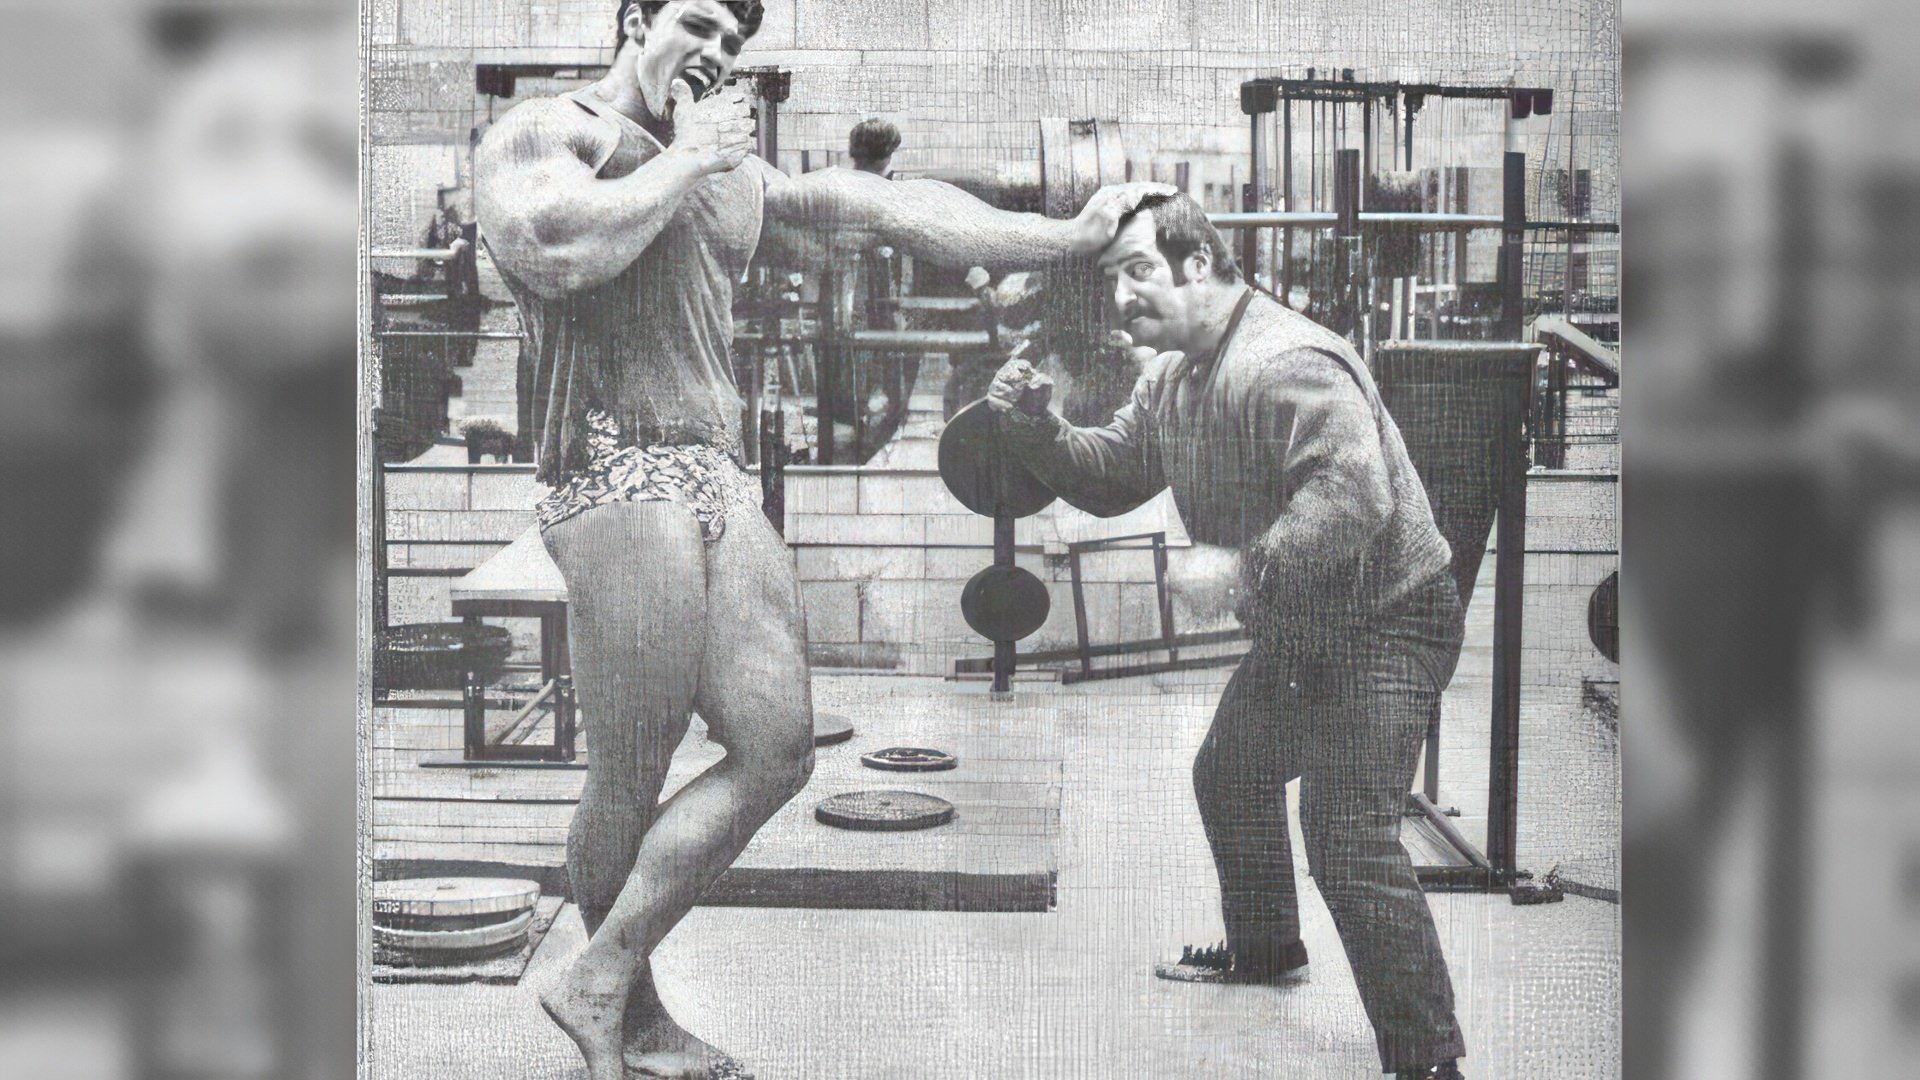 Schwarzenegger's youth is called the golden era of bodybuilding